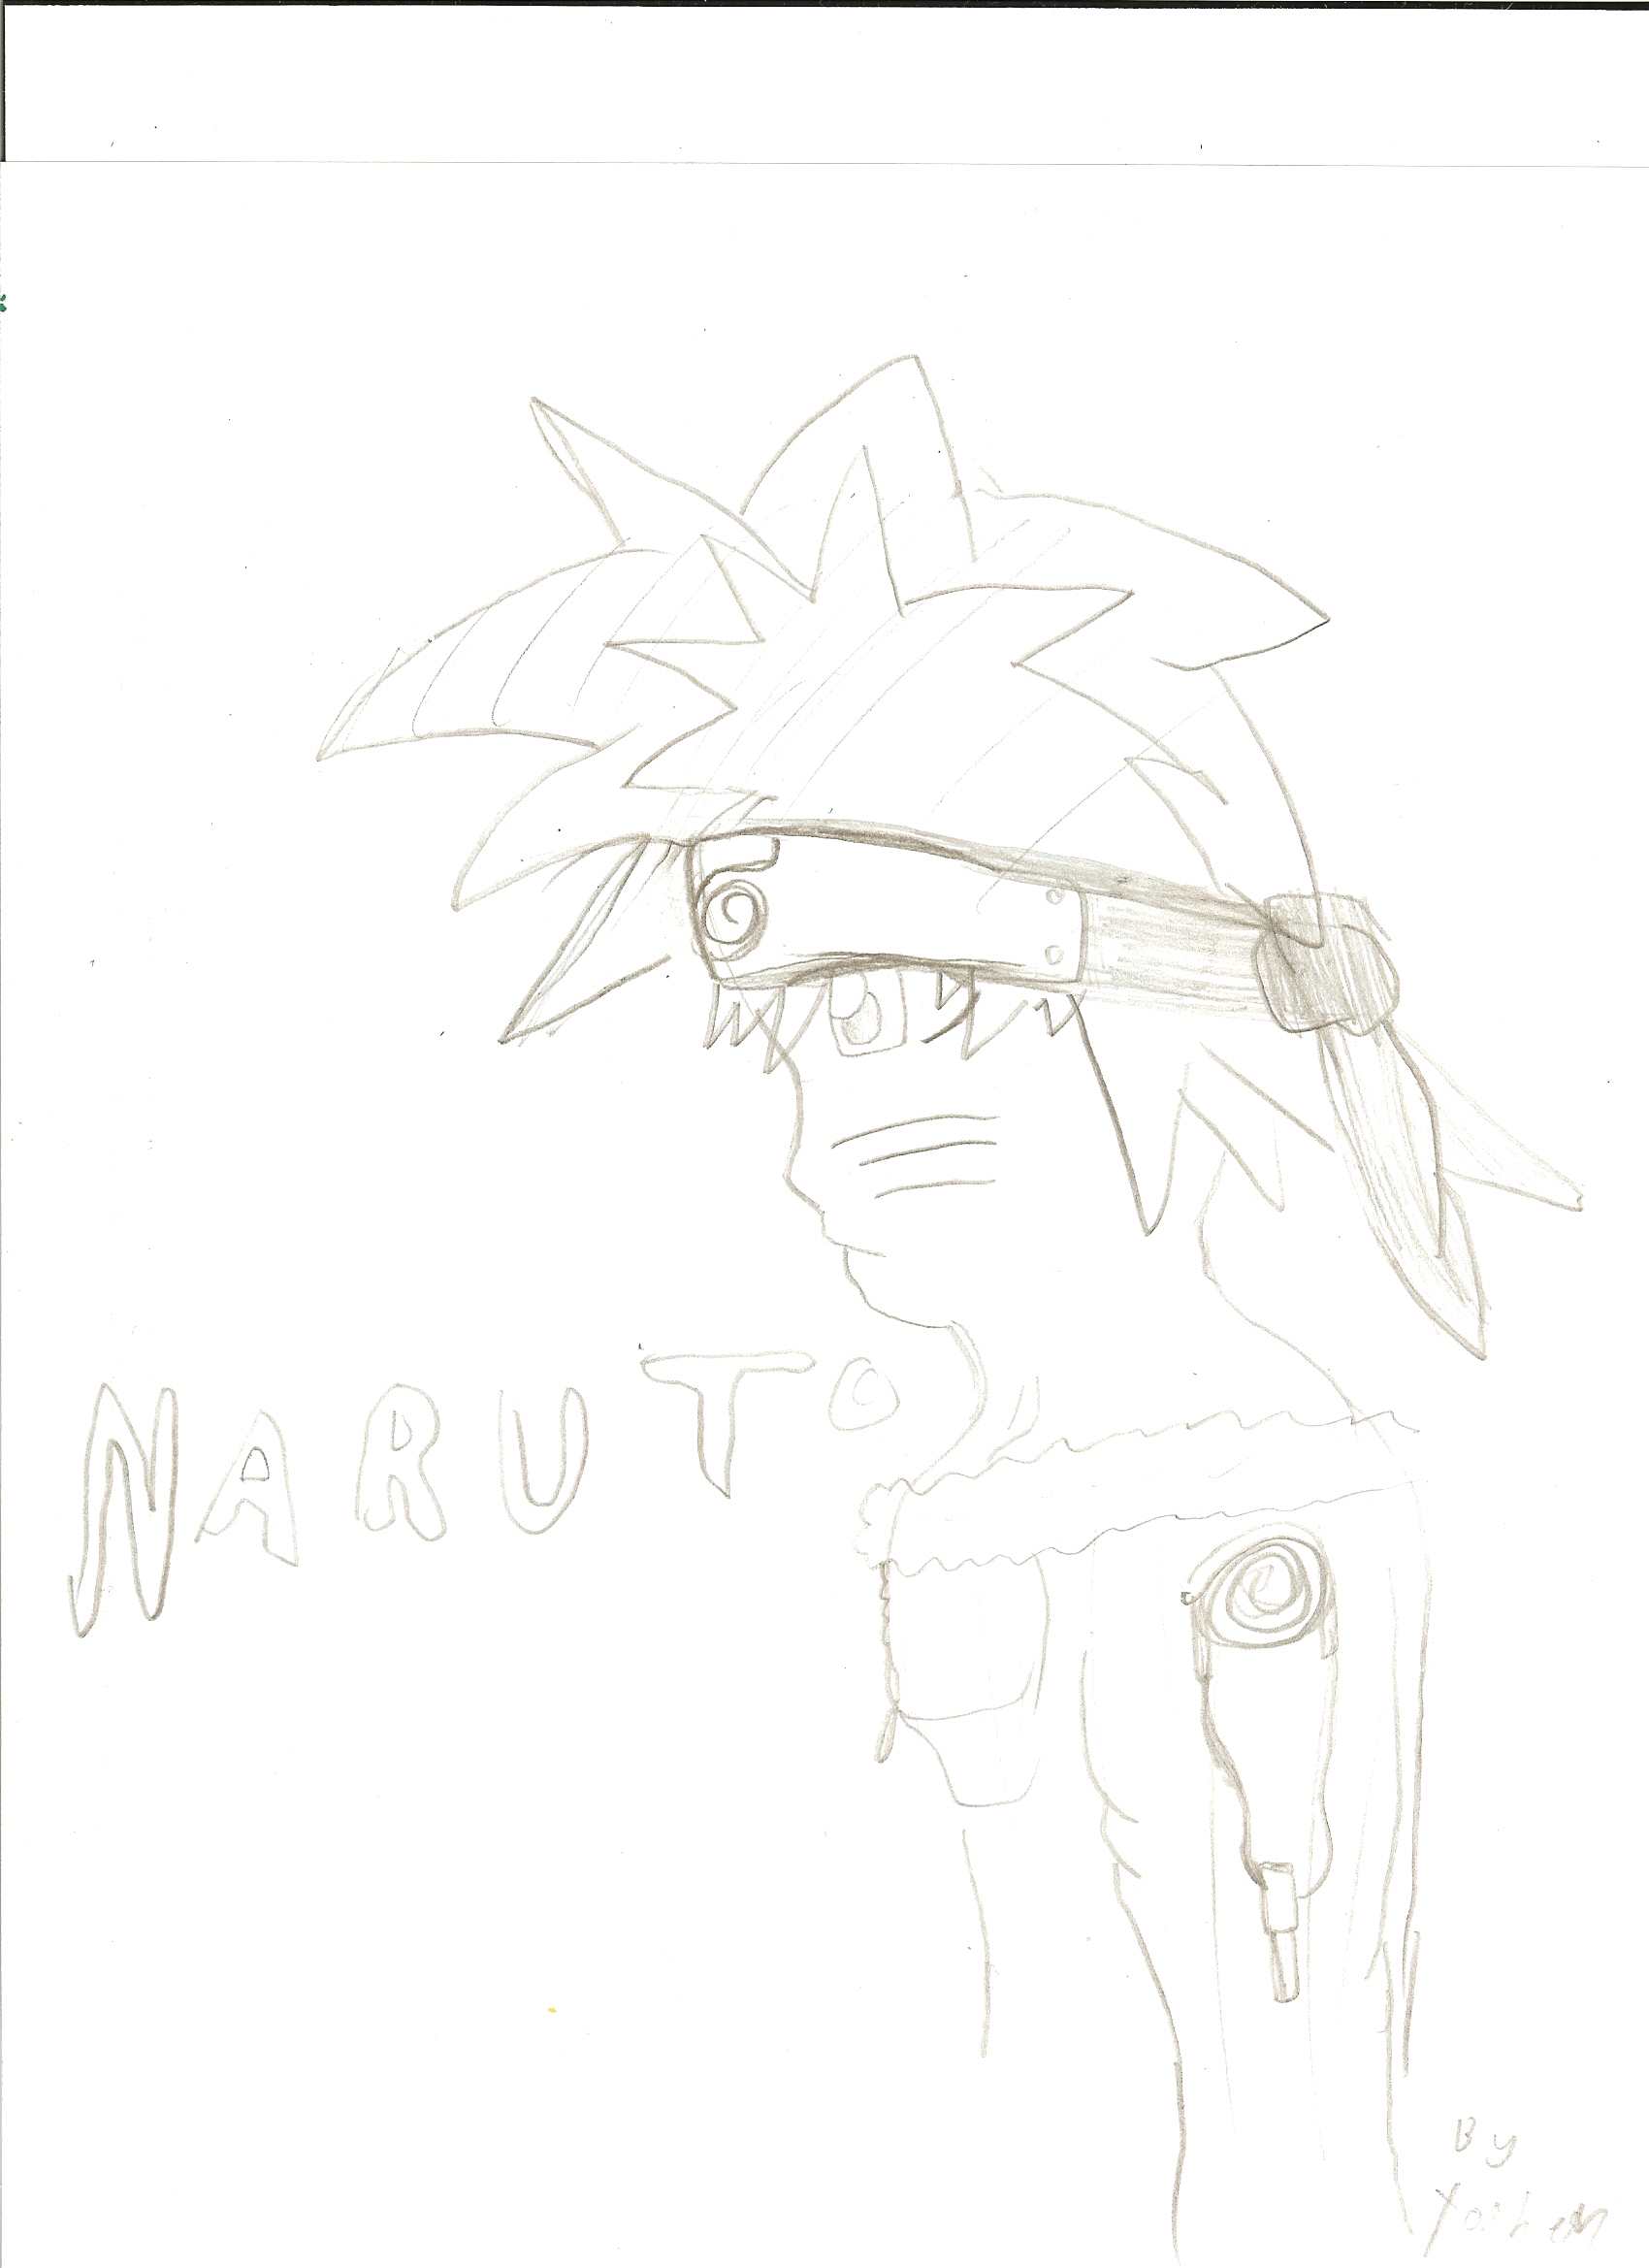 Naruto by Yyoshen